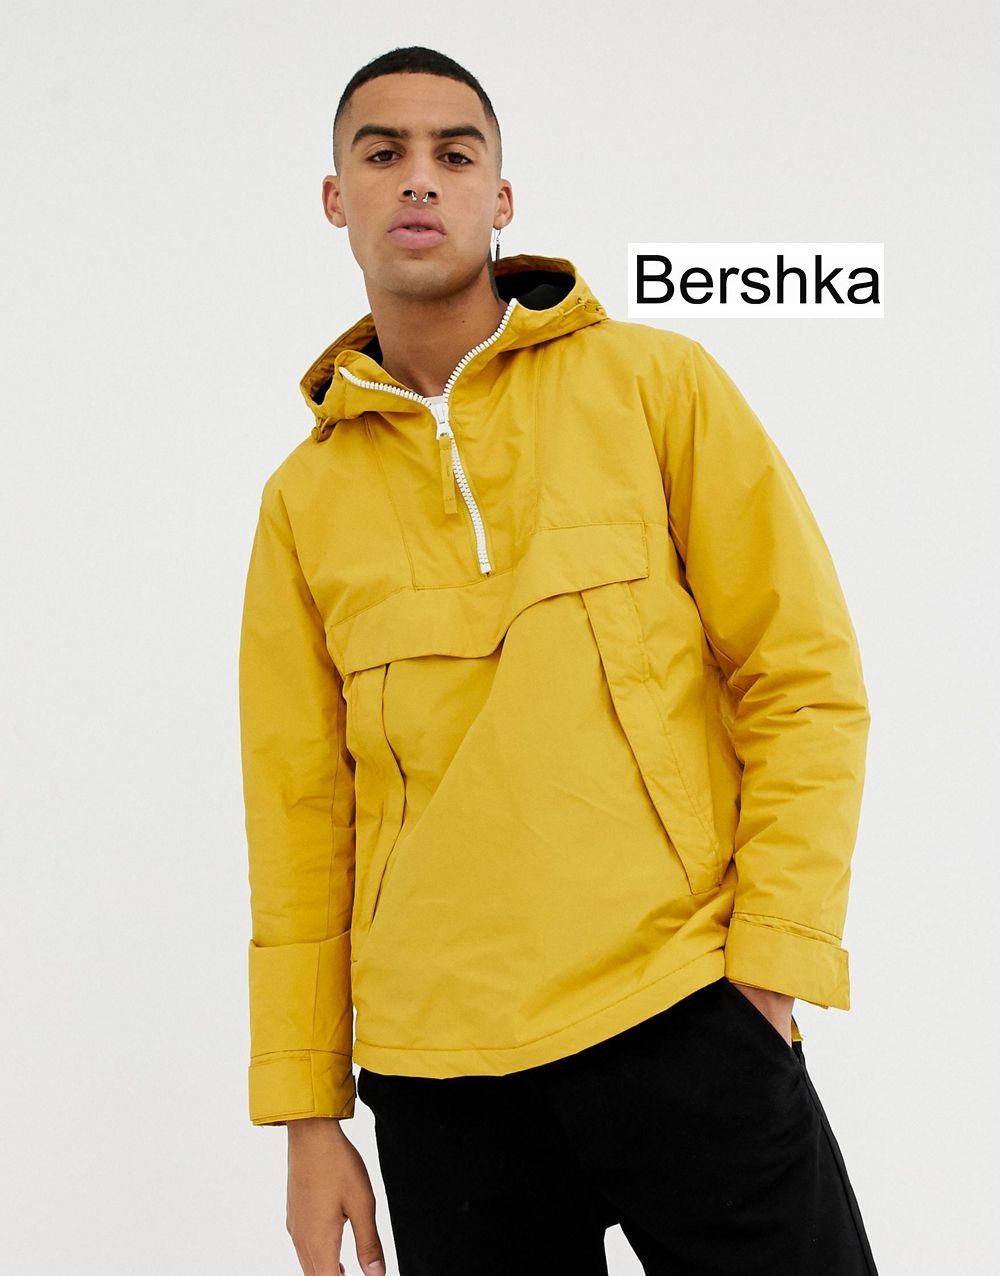 Bershka Hooded Jacket In Yellow With Half Zip And Side Zips Bershka size S